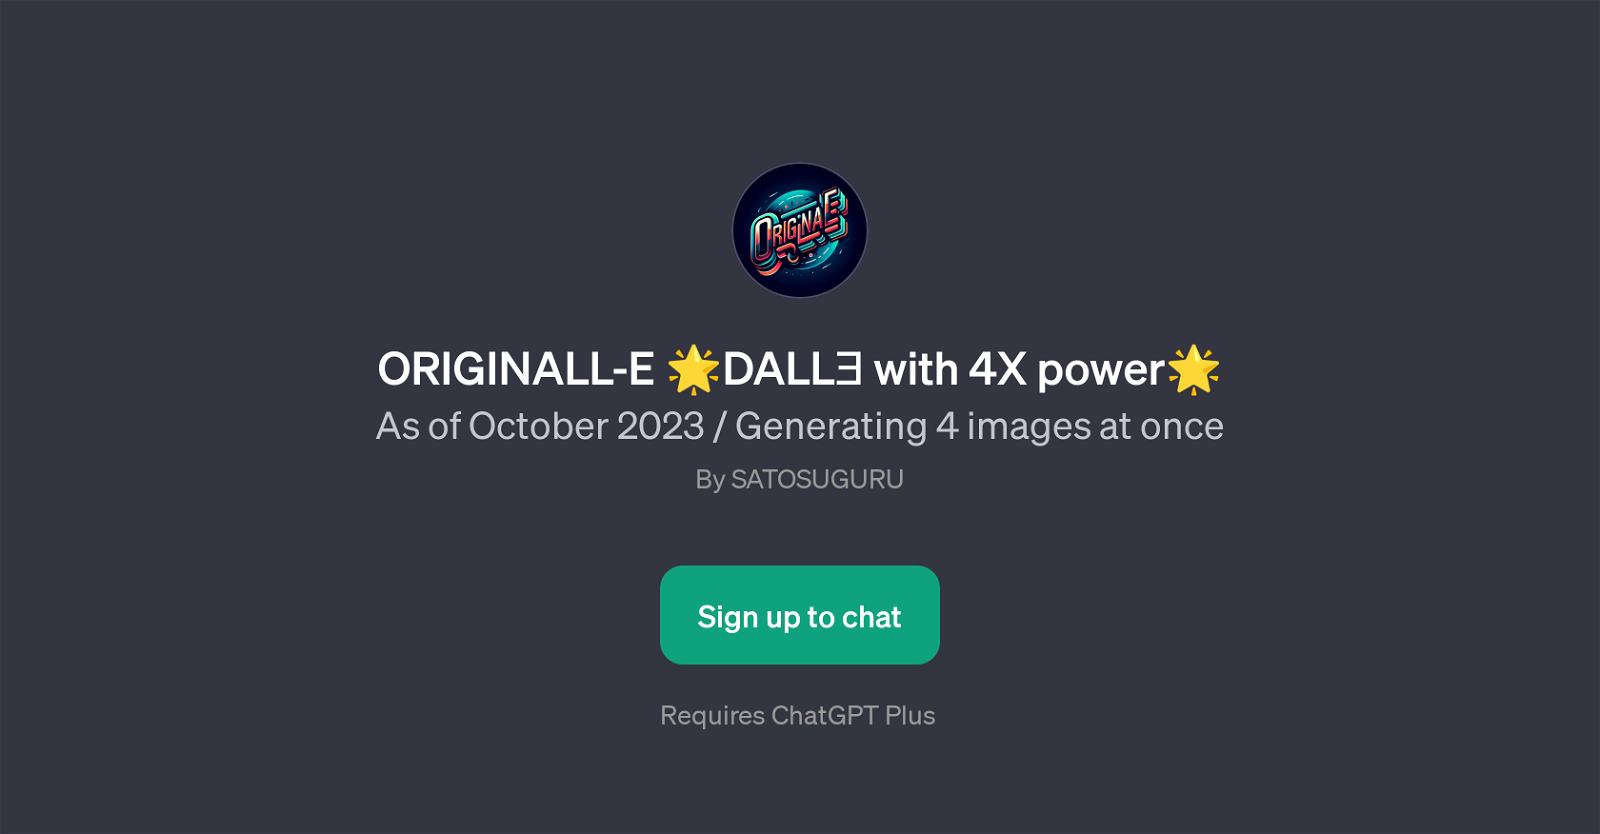 ORIGINALL-E DALL with 4X power website